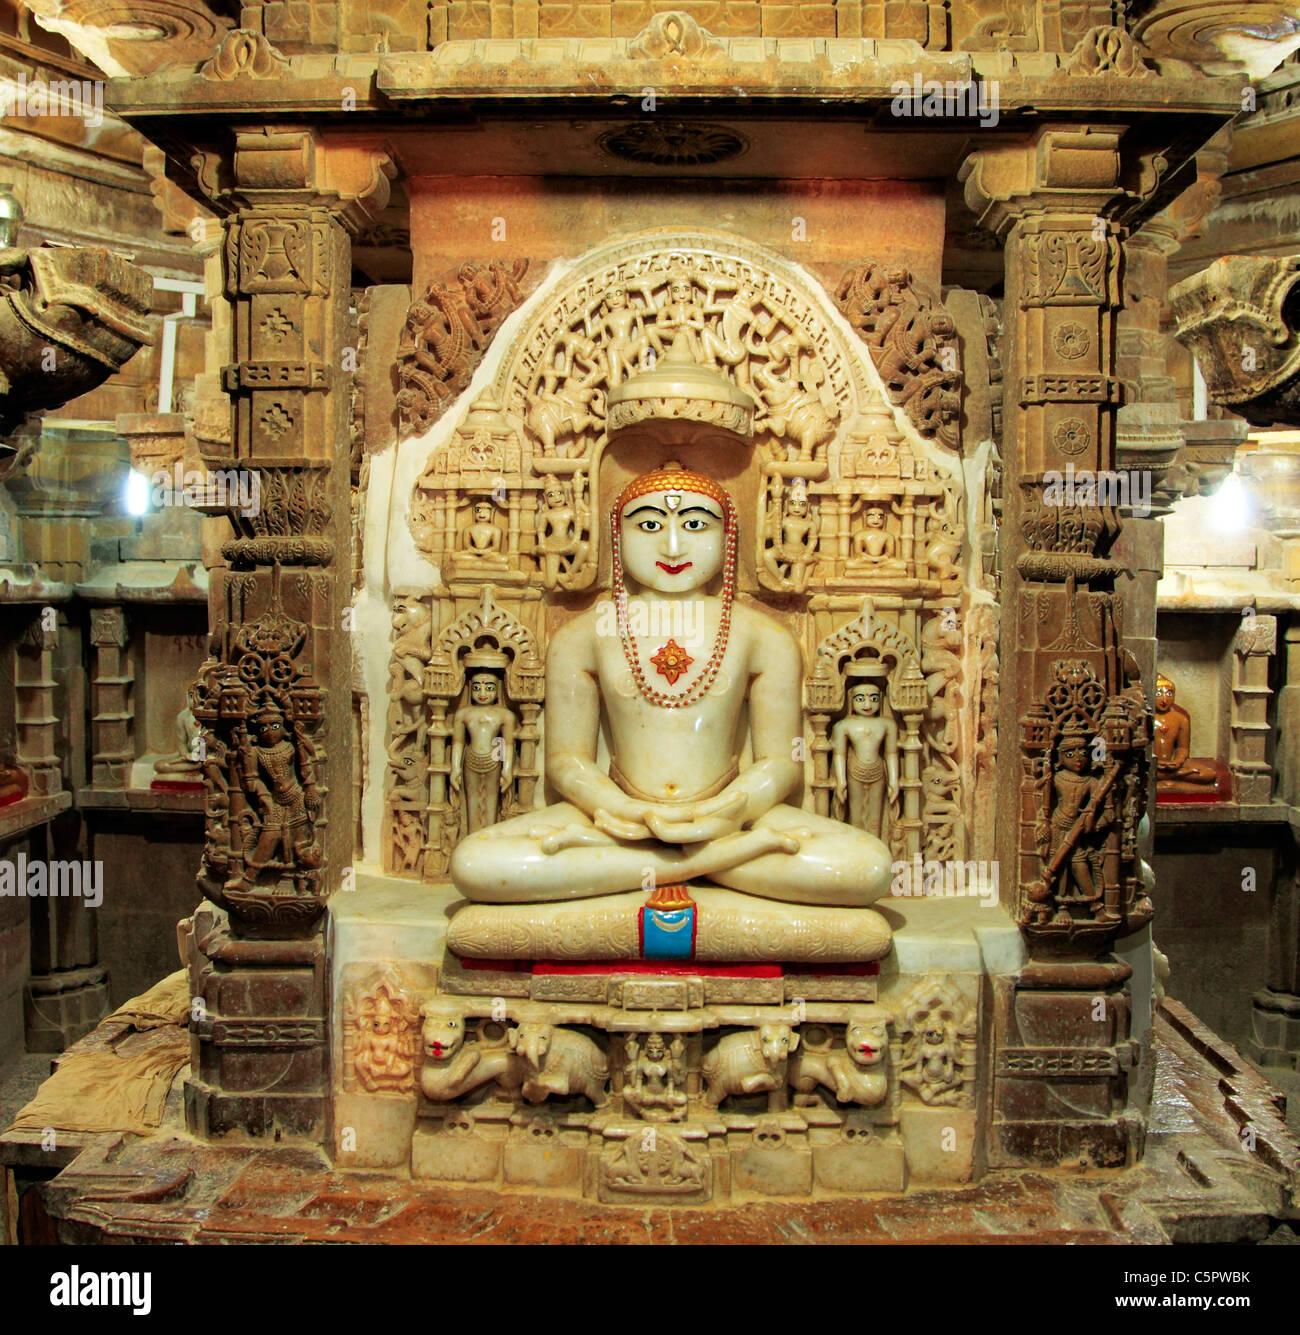 Jain Temple, Jaisalmer, Rajasthan, India Stock Photo